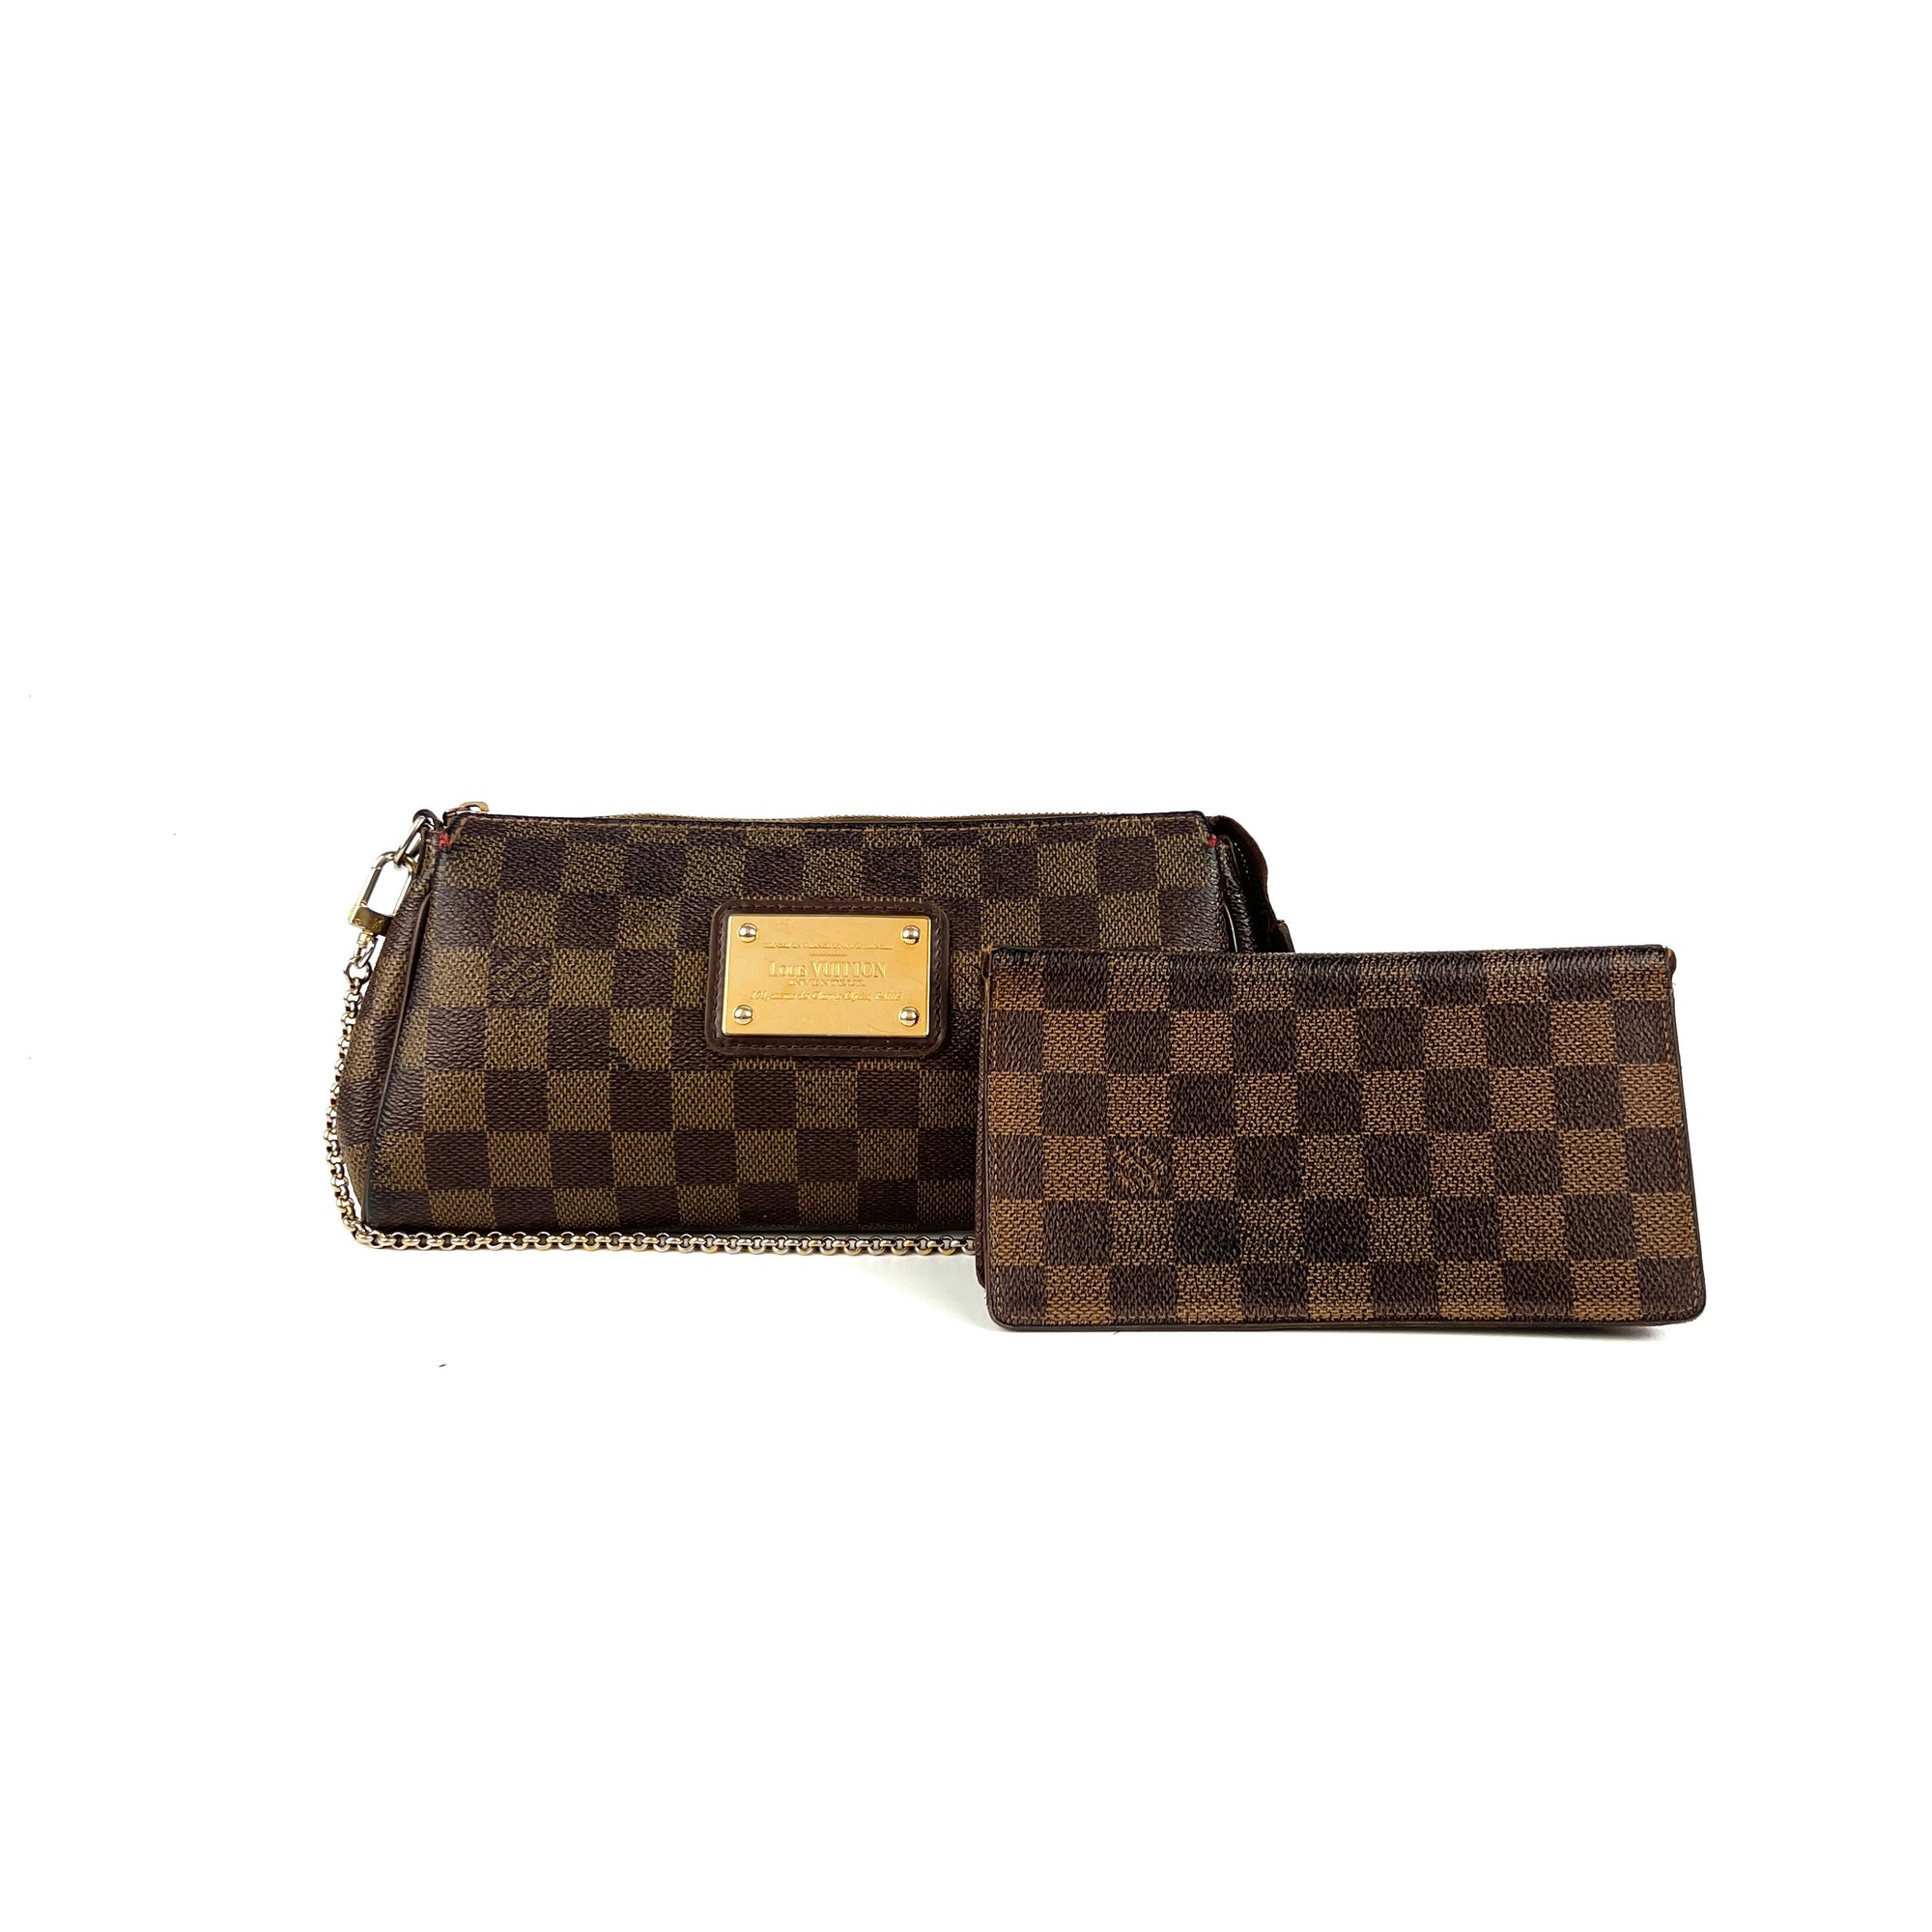 Louis Vuitton Handbags & Purses Louis Vuitton Eva, Authenticity Guaranteed